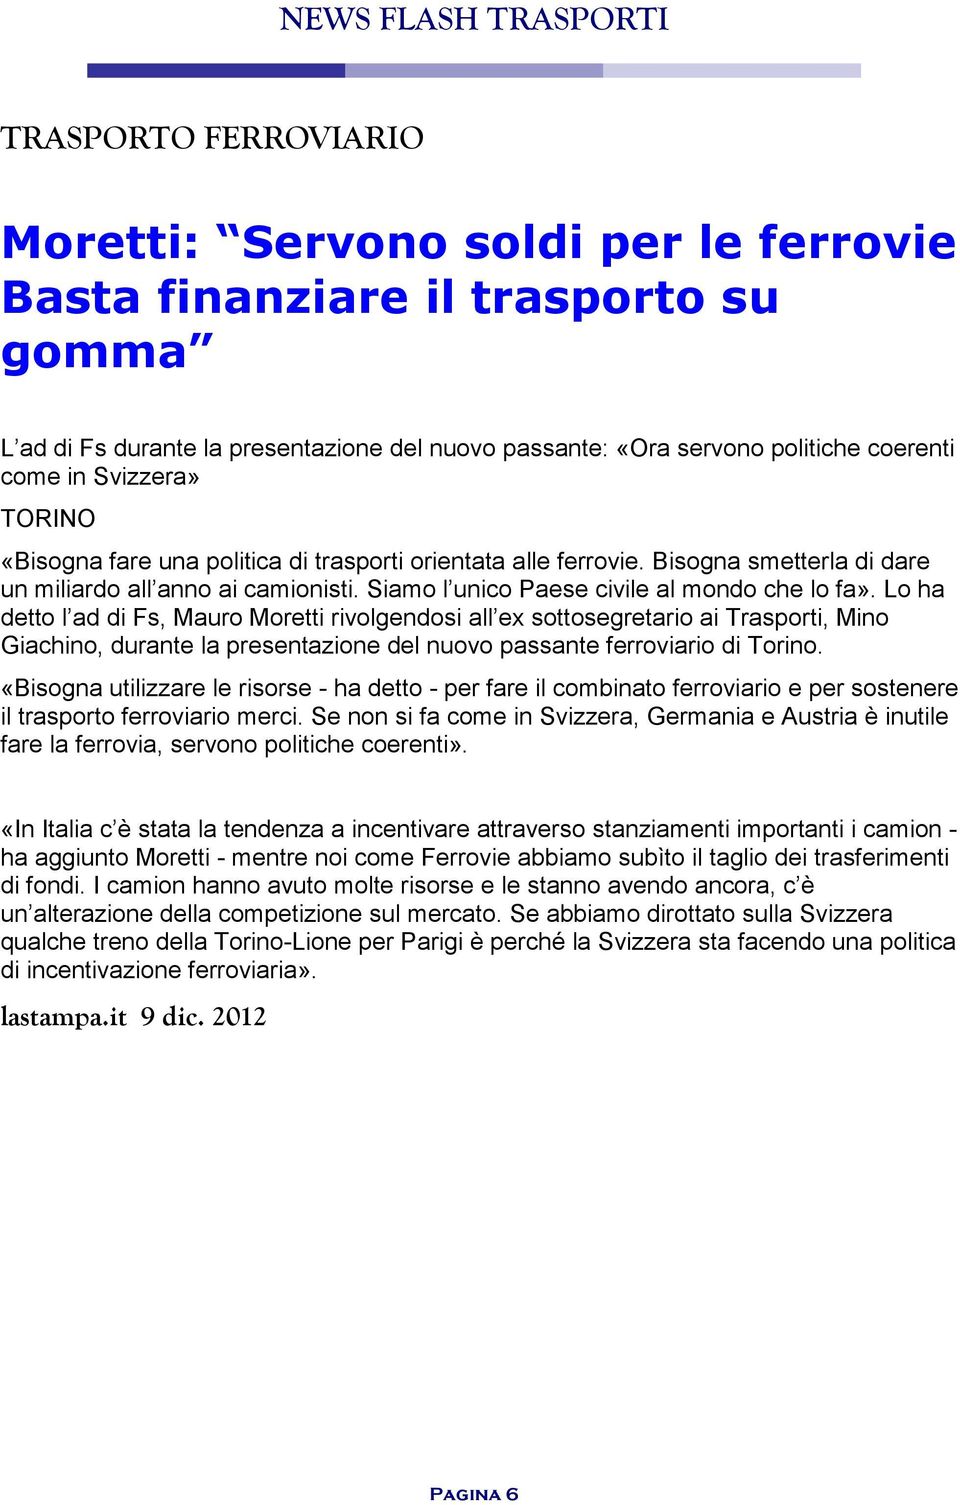 Lo ha detto l ad di Fs, Mauro Moretti rivolgendosi all ex sottosegretario ai Trasporti, Mino Giachino, durante la presentazione del nuovo passante ferroviario di Torino.